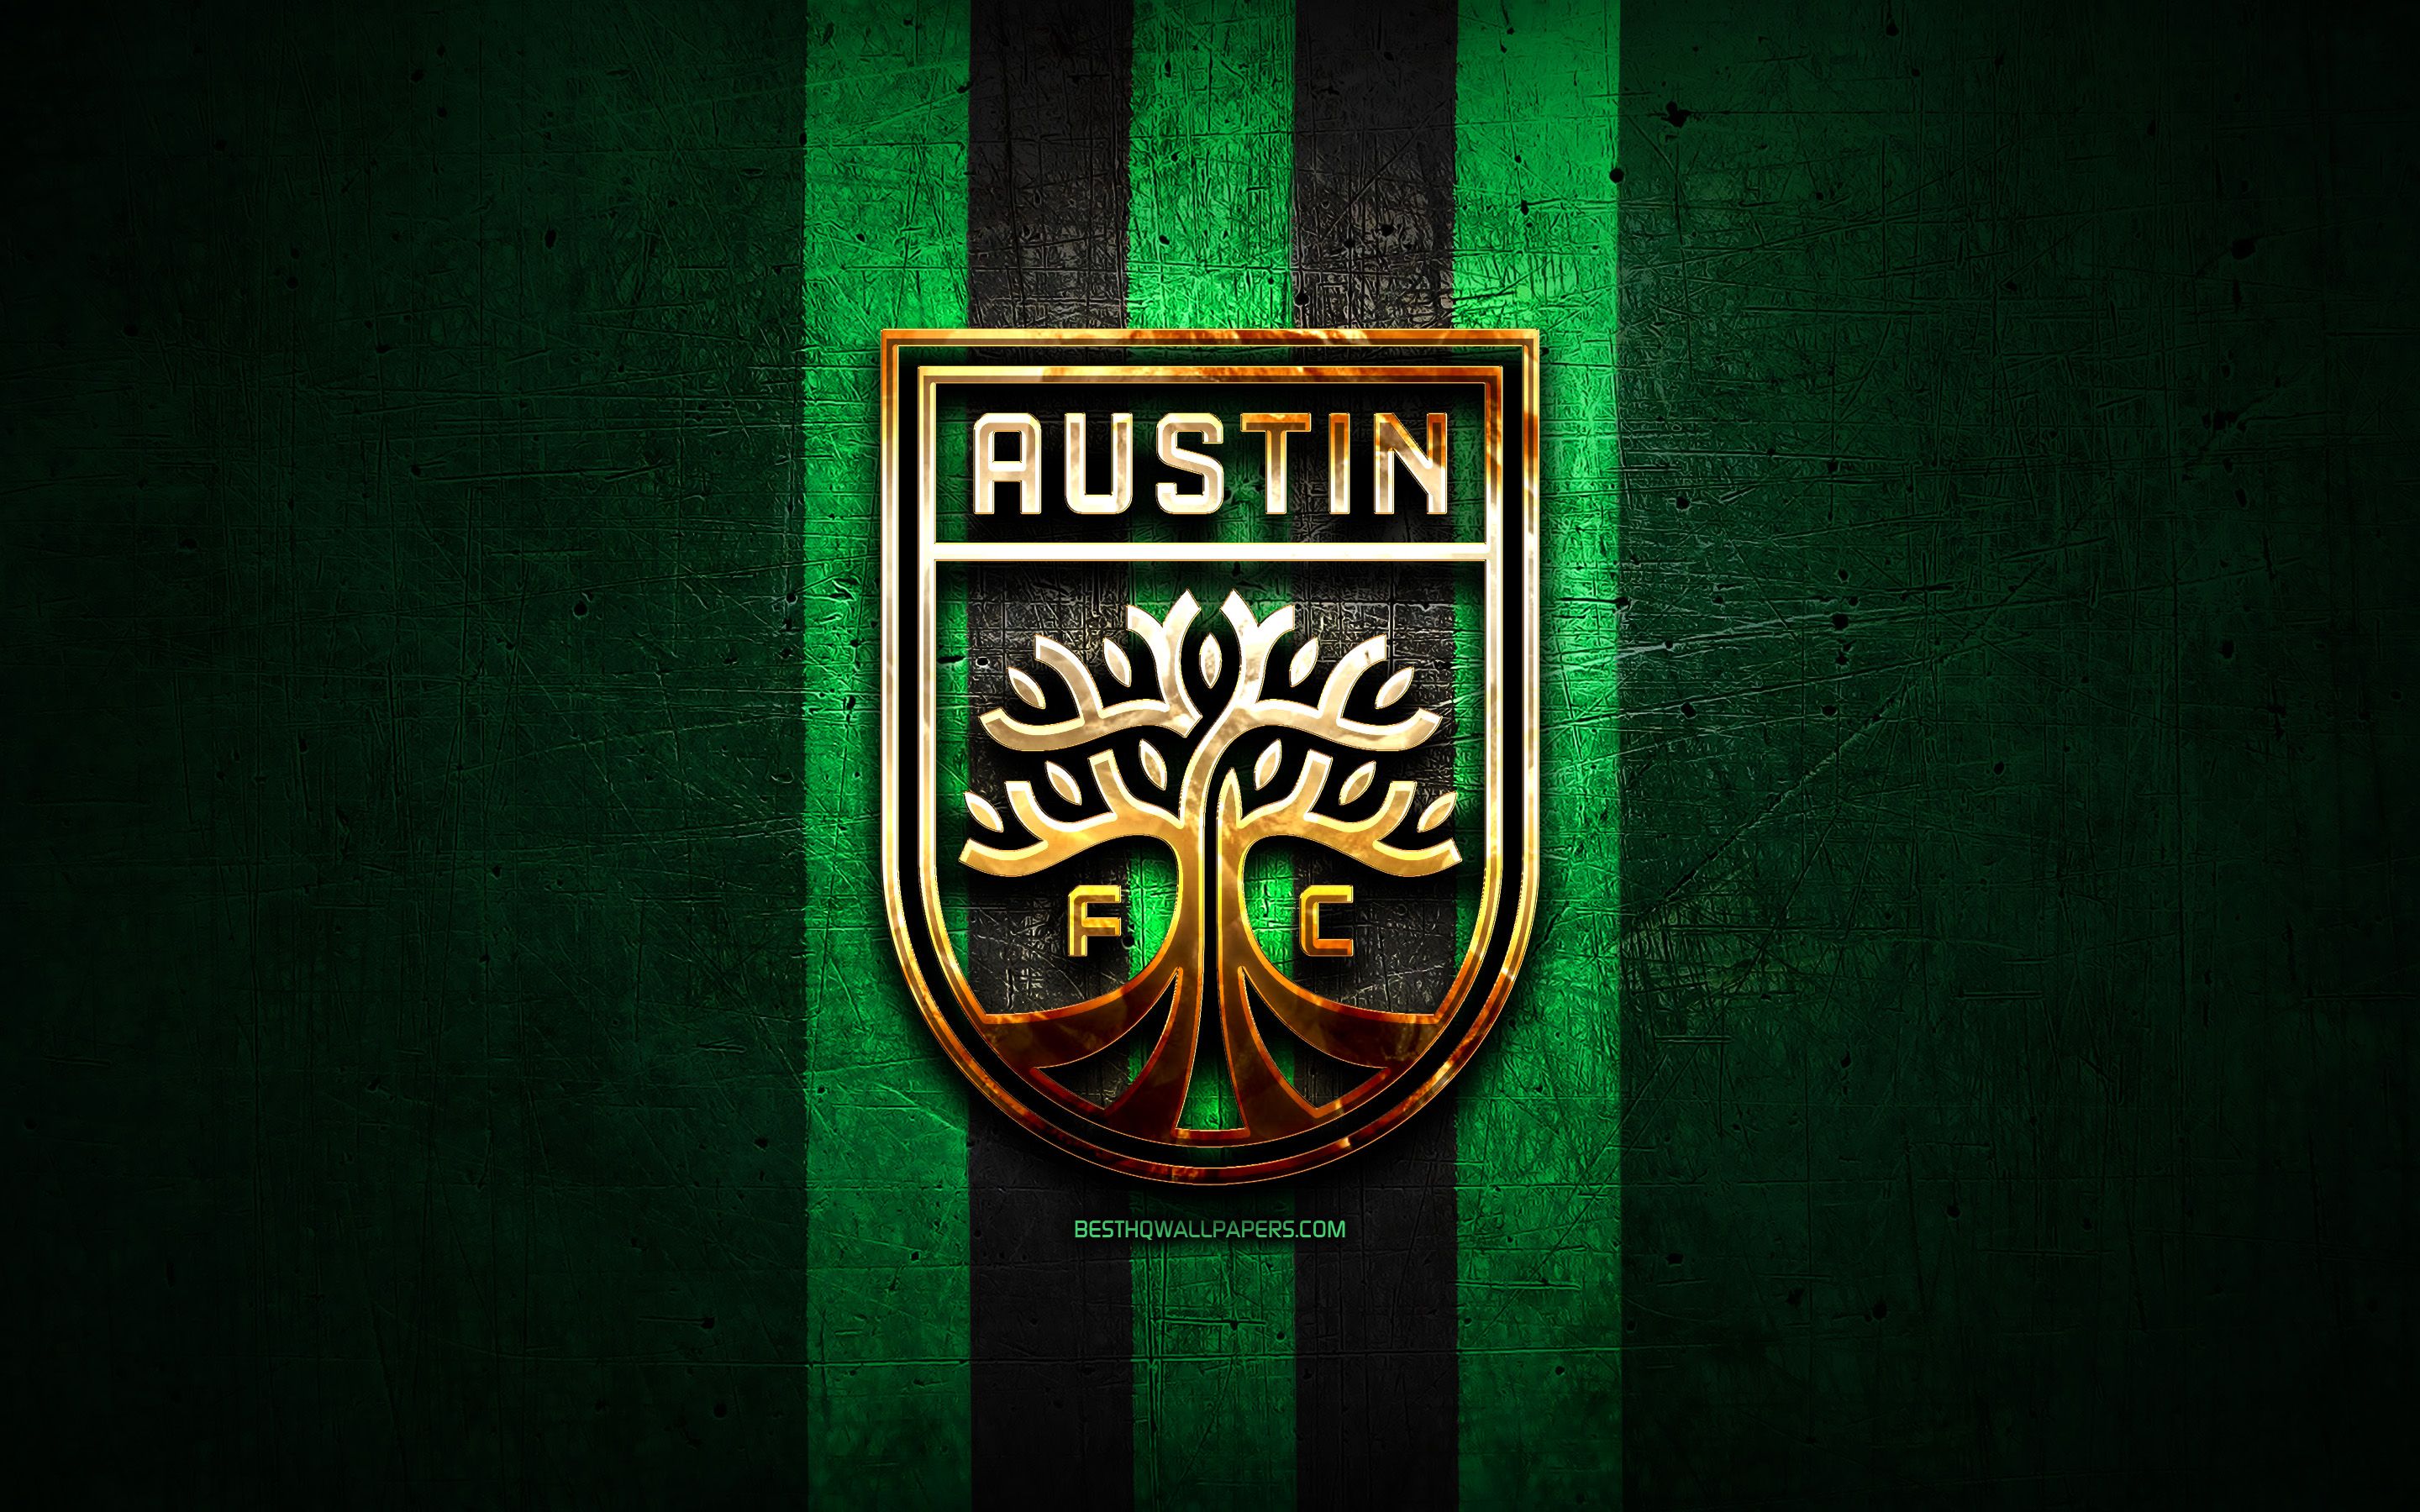 Фк остин. Austin FC. Остин (футбольный клуб). Austin FC logo. Остин клуб МЛС.